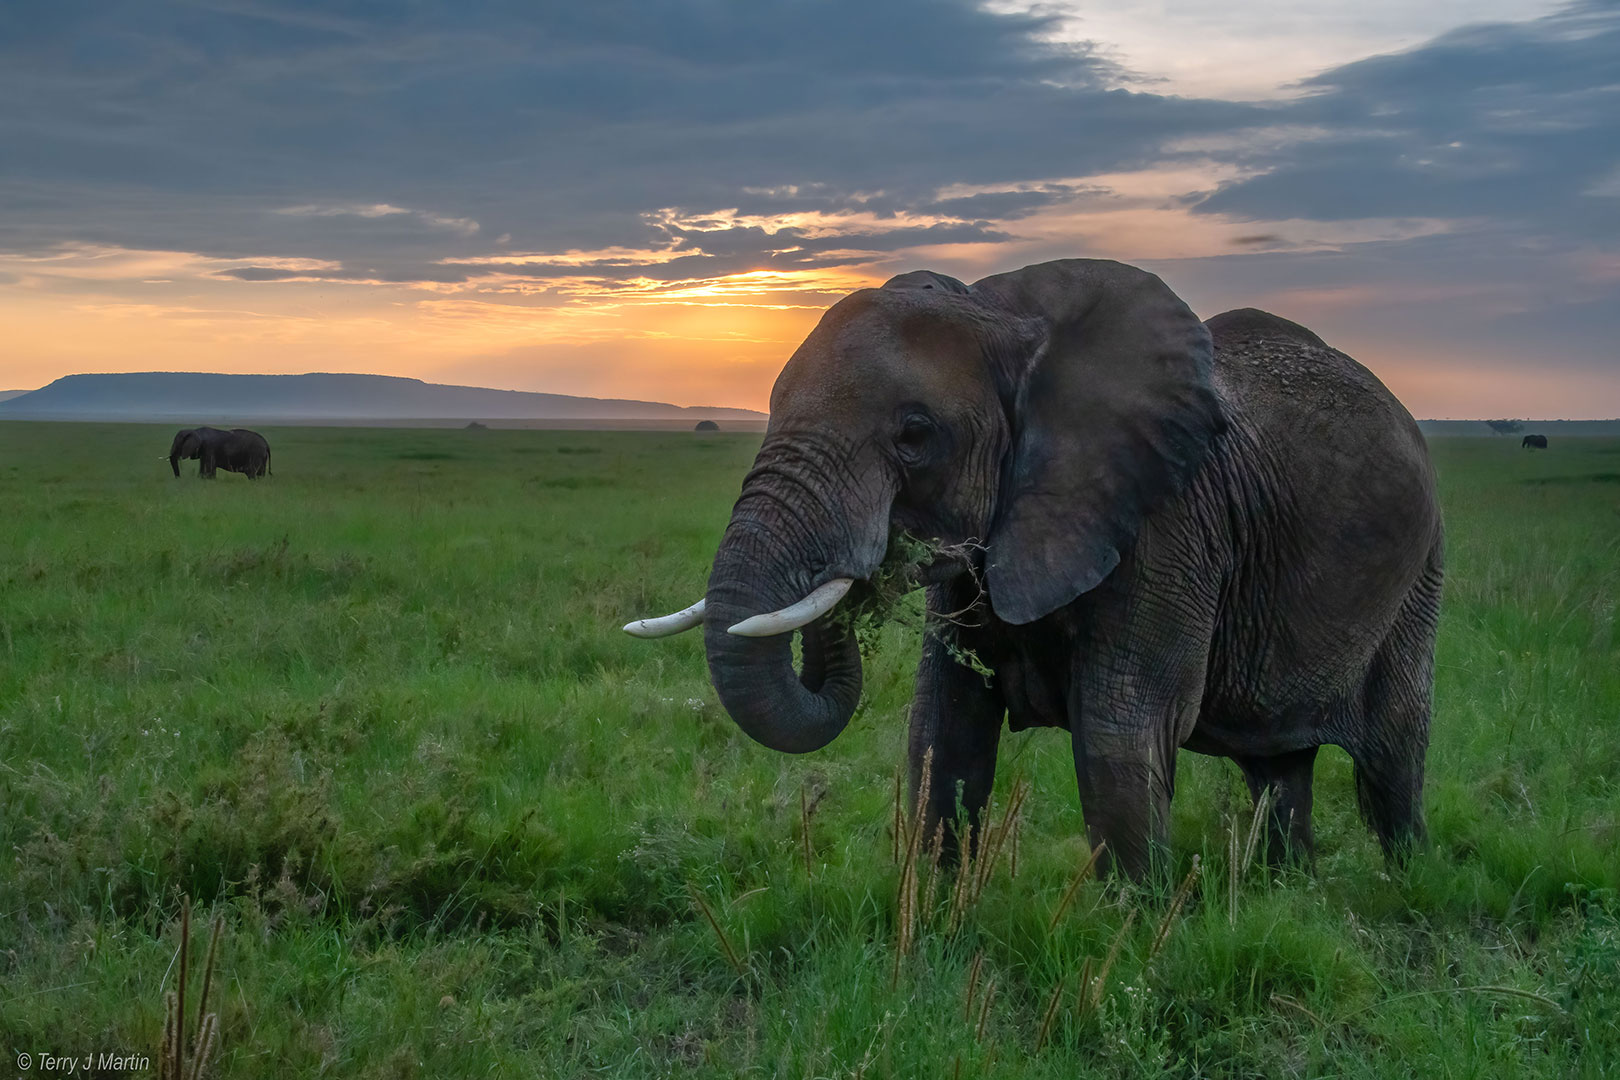 A single Elephant on the Serengeti in Tanzania